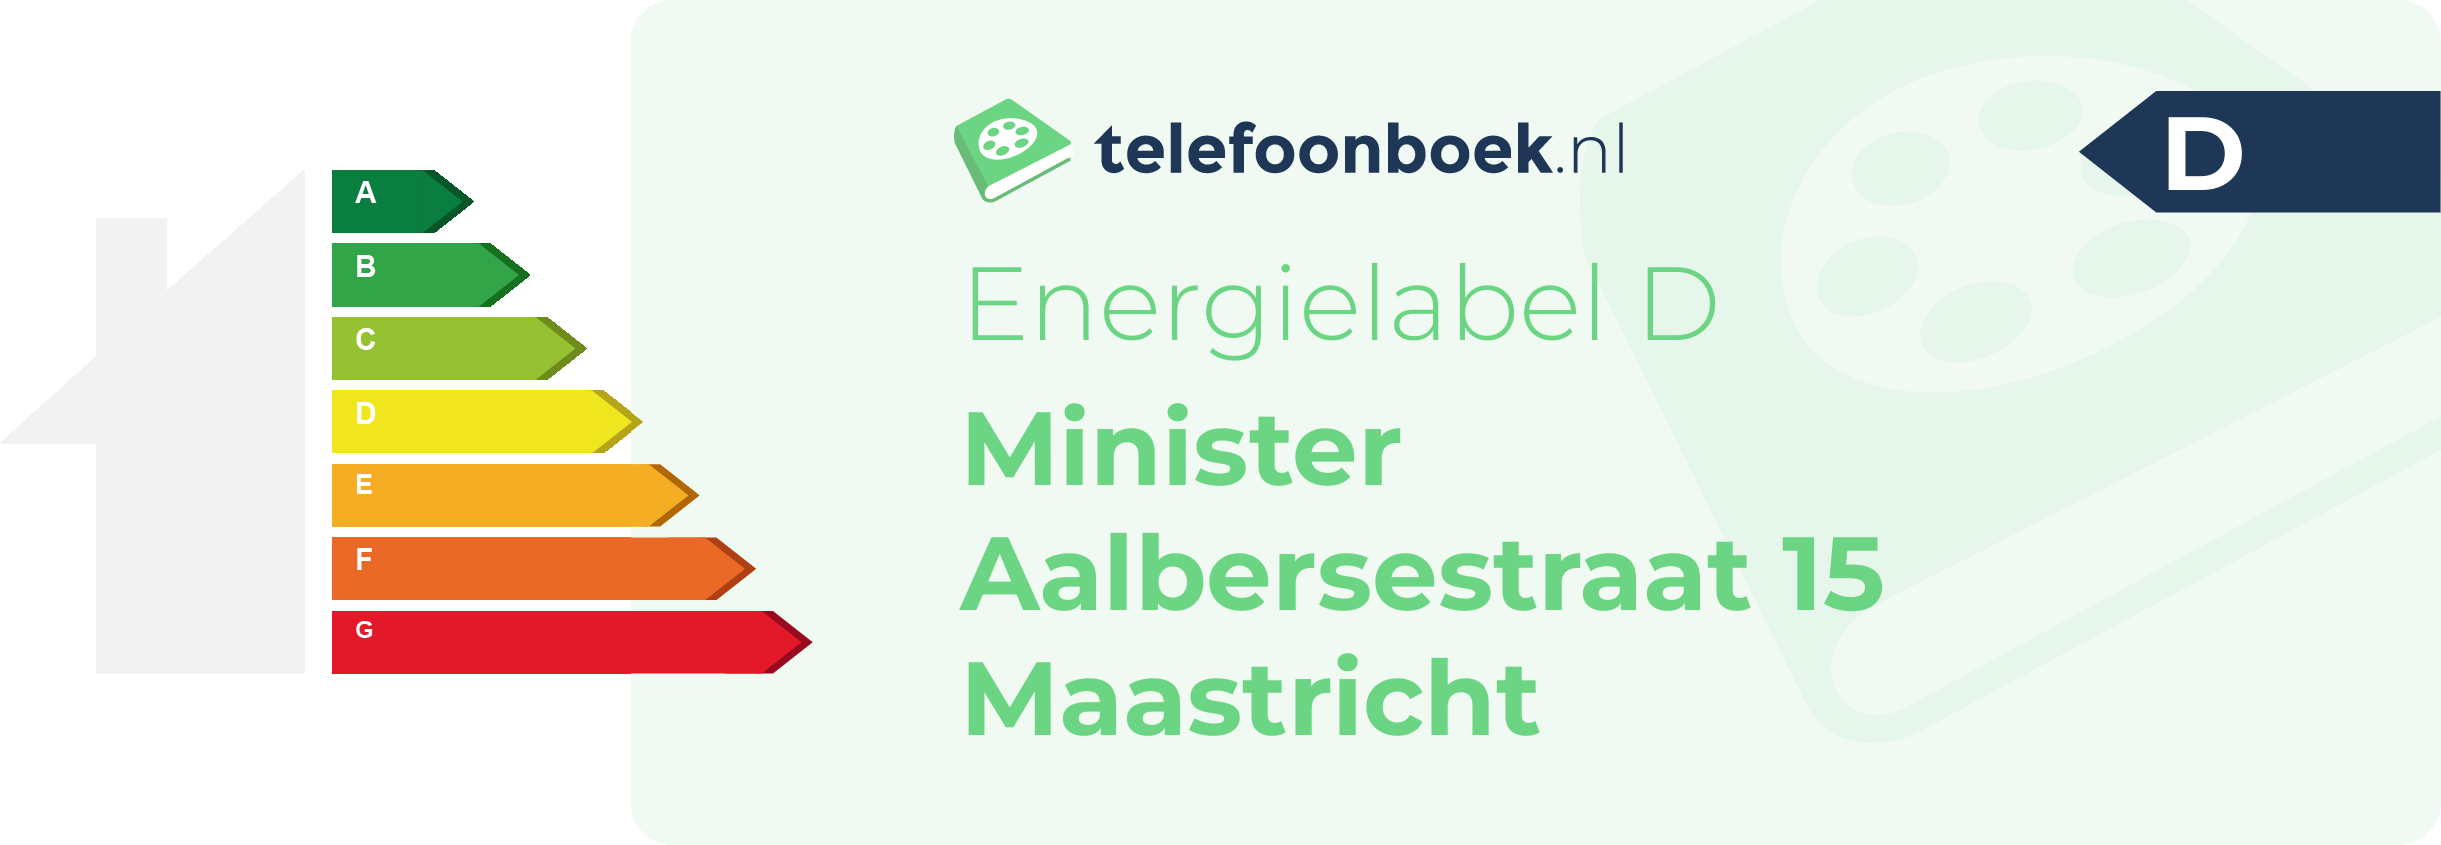 Energielabel Minister Aalbersestraat 15 Maastricht